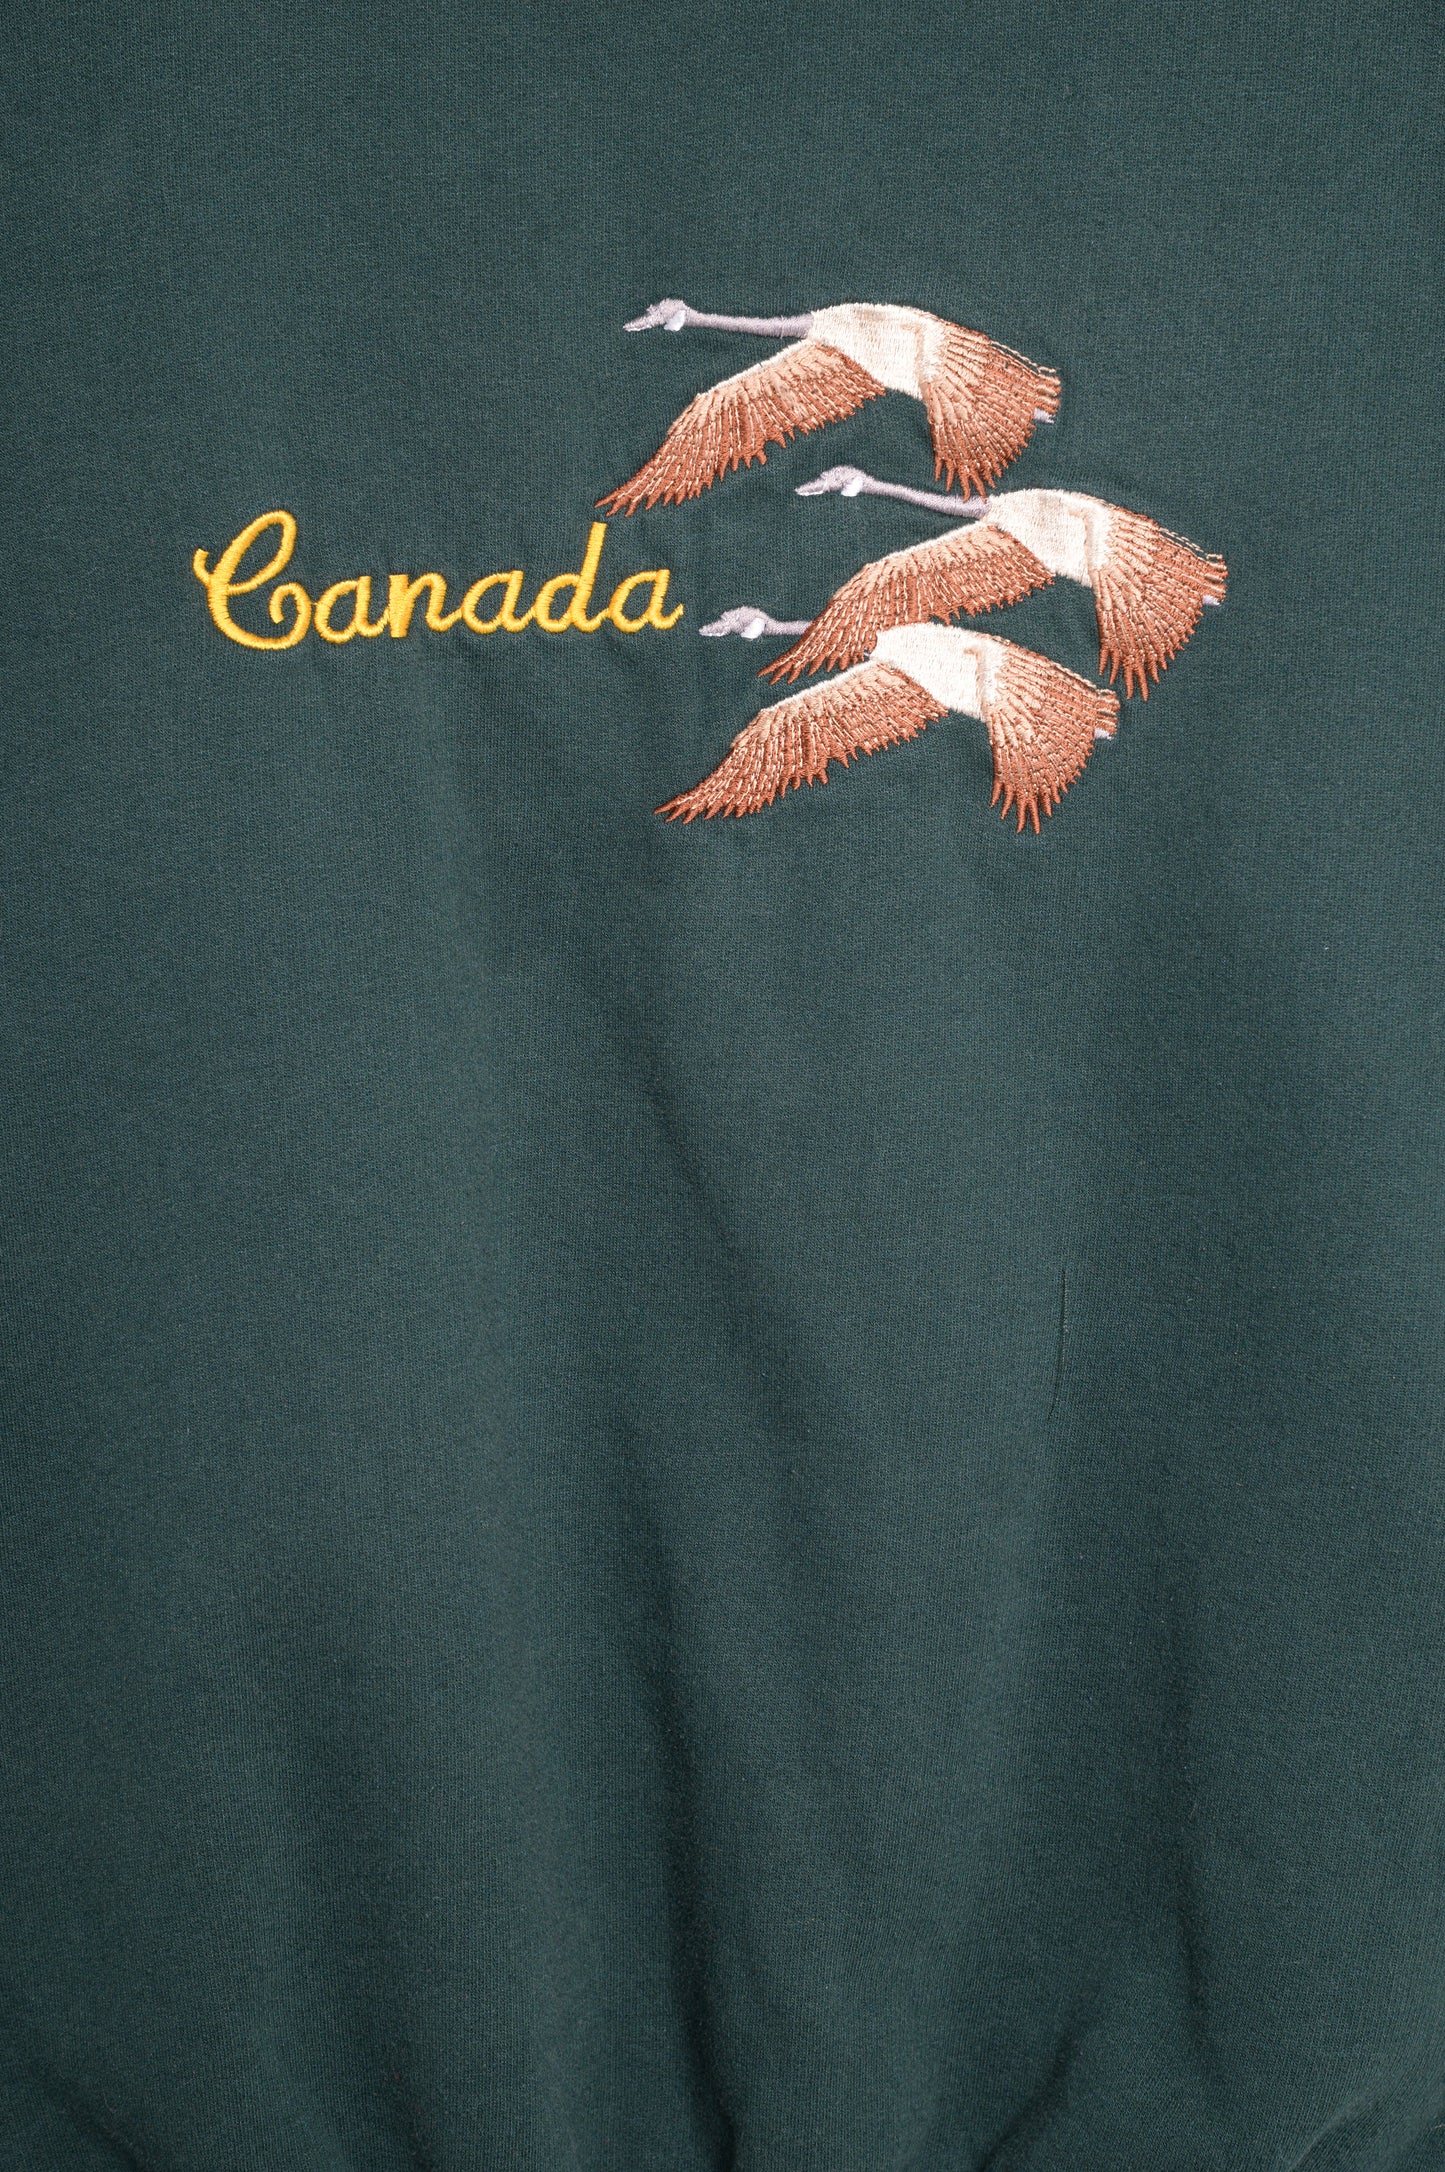 Faded Canada Goose Sweatshirt